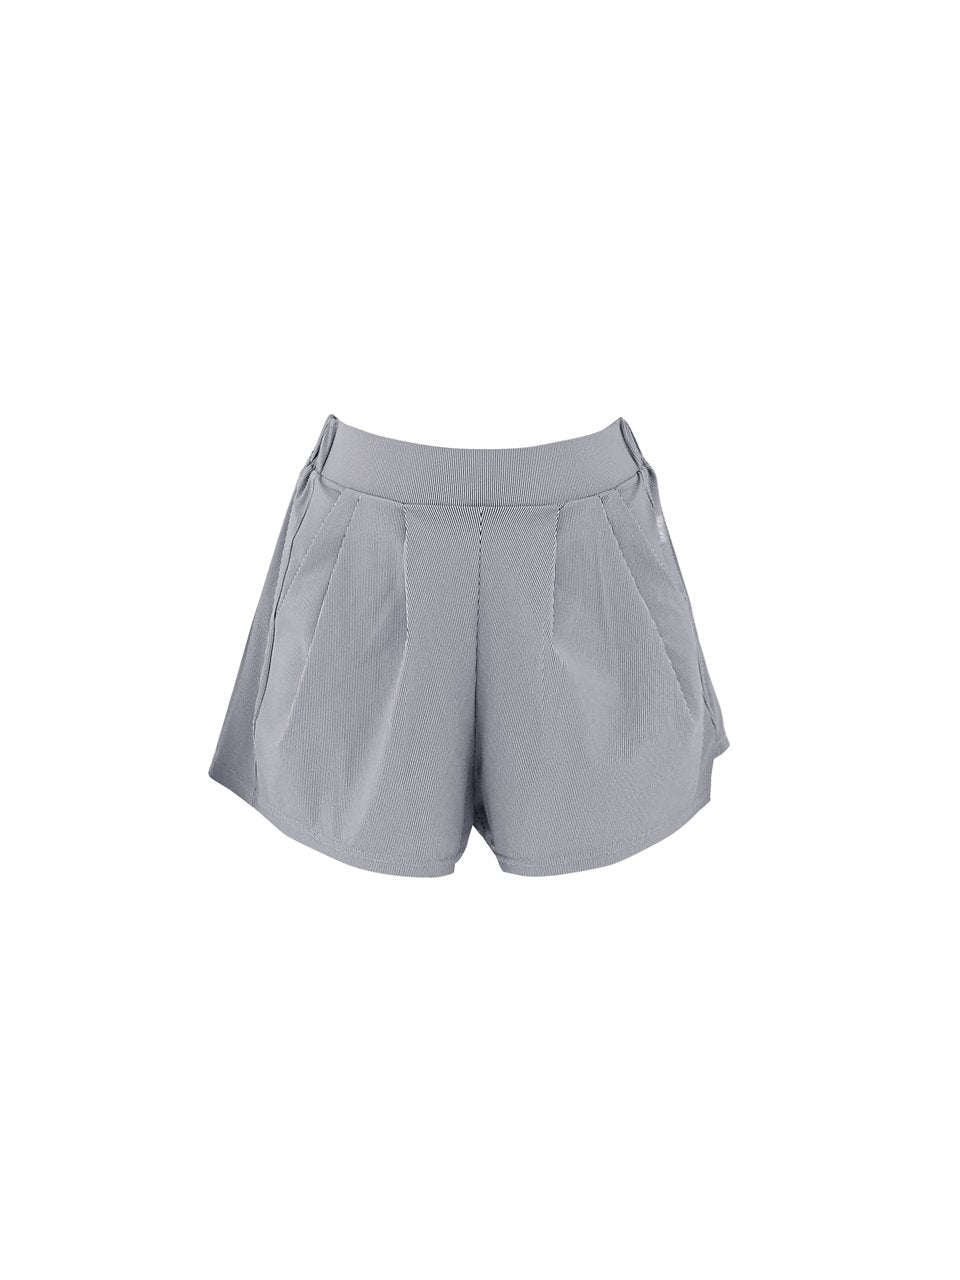 Paper Work Shorts-Cover Up Rashguard Swimwear-QUA VINO